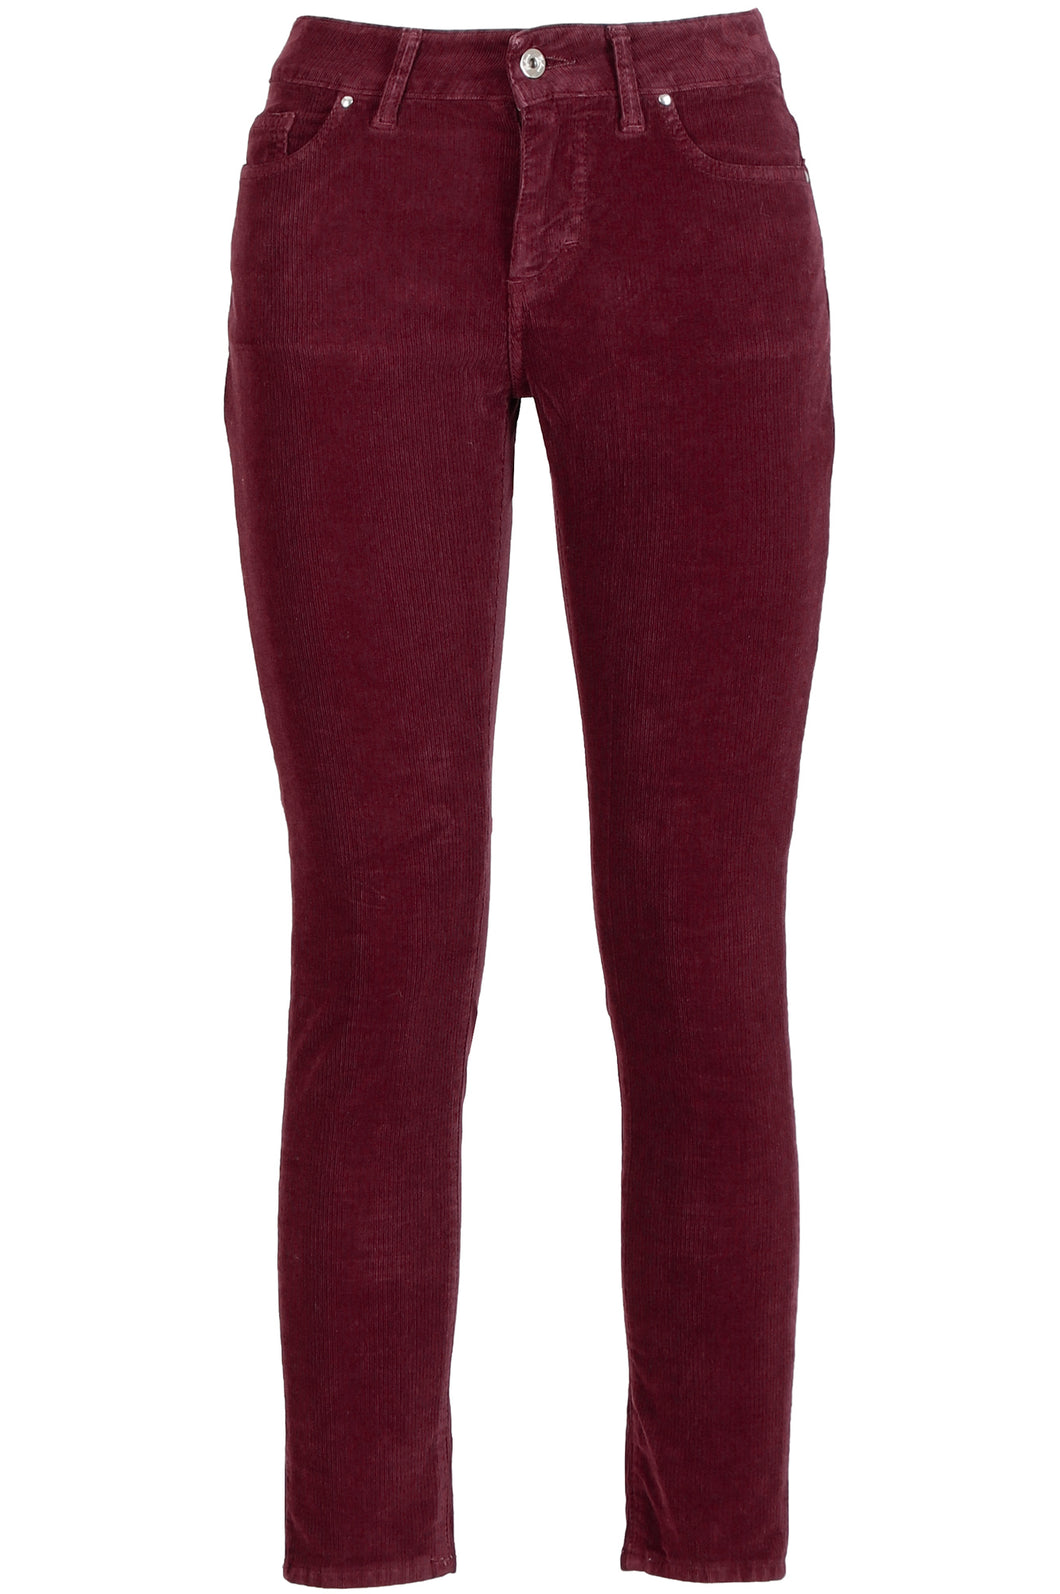 Pantaloni Donna colore Bordeaux-Rosso